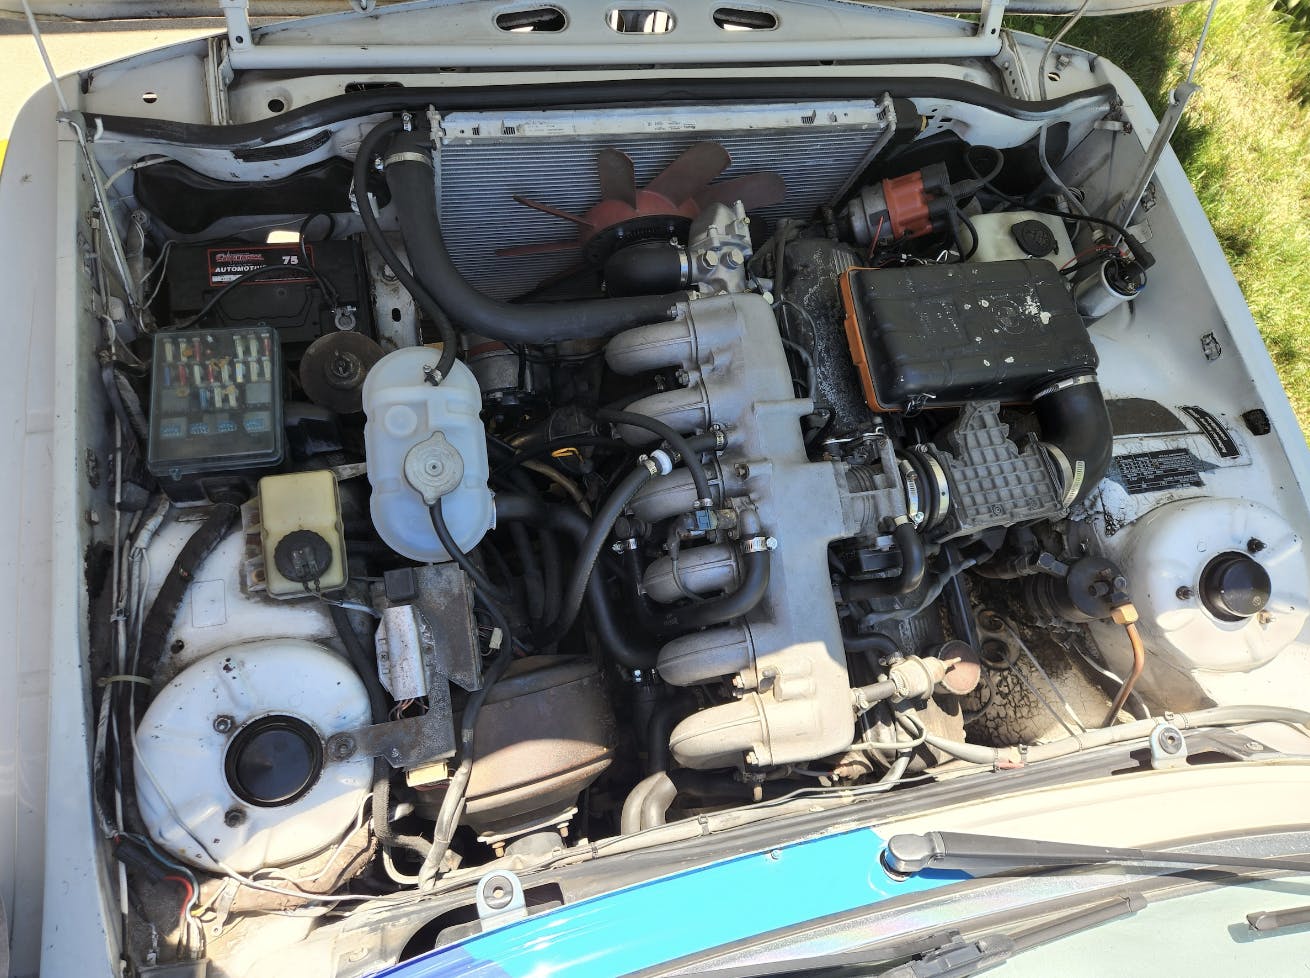 1978 BMW 530i engine bay